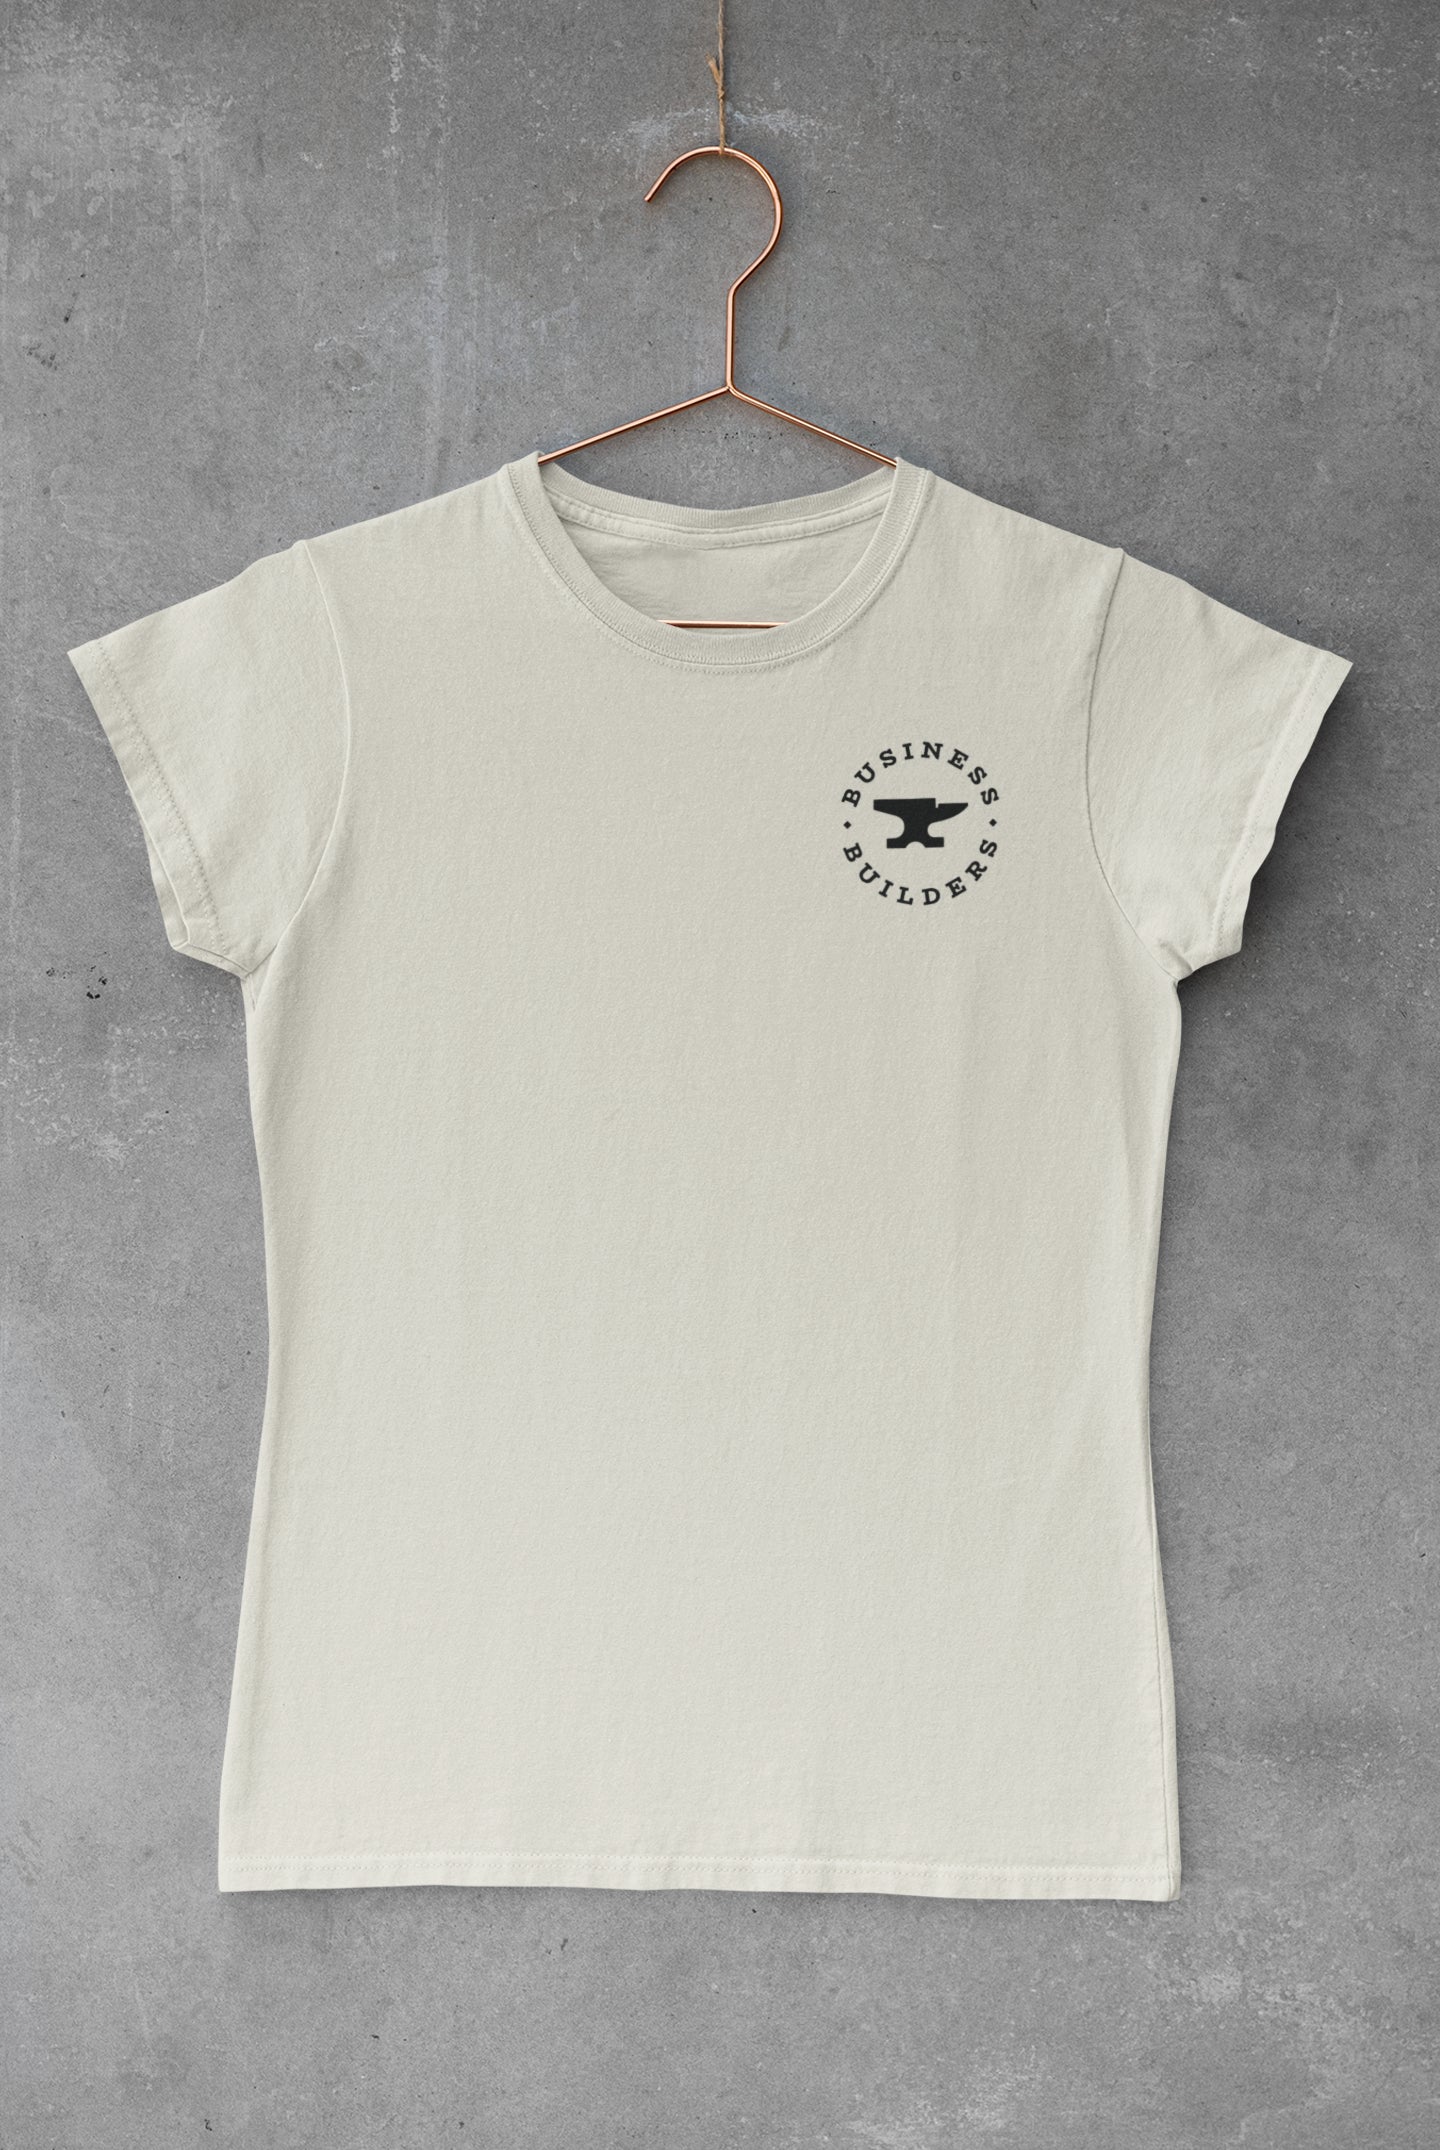 BB Woman Shirt - White Plain